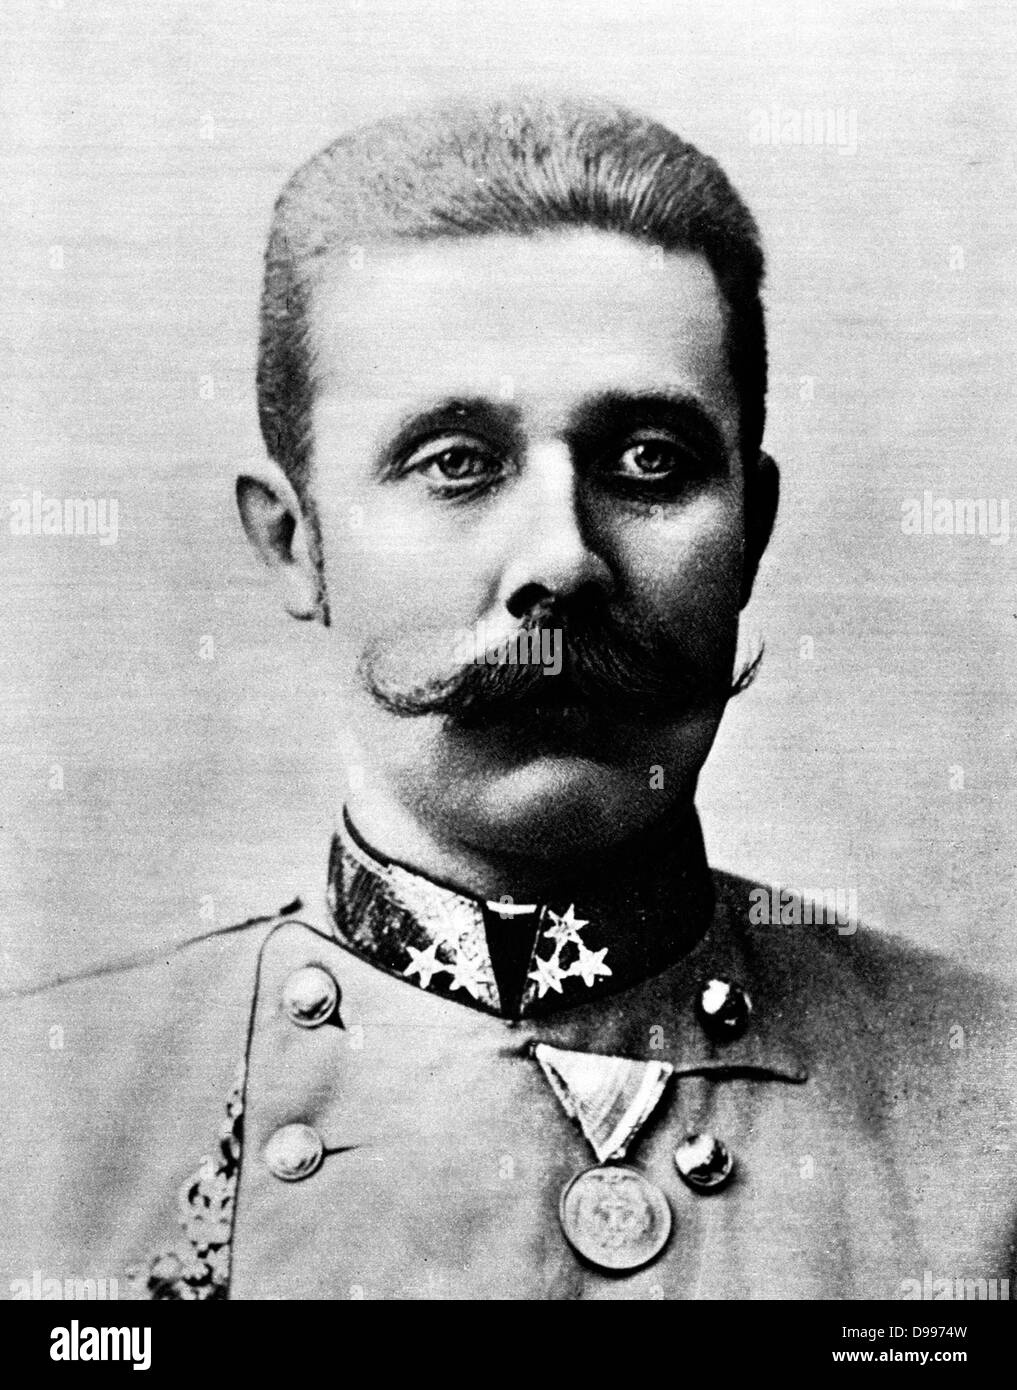 Franz Ferdinand (18 dicembre 1863-28 giugno 1914) era un Arciduca d Austria-Este, austro-ungarici e Principe reale di Ungheria e di Boemia e dal 1889 fino alla sua morte presunta erede al trono austro-ungarico. Il suo assassinio a Sarajevo si precipita Austria-ungheria la dichiarazione di guerra contro la Serbia Foto Stock